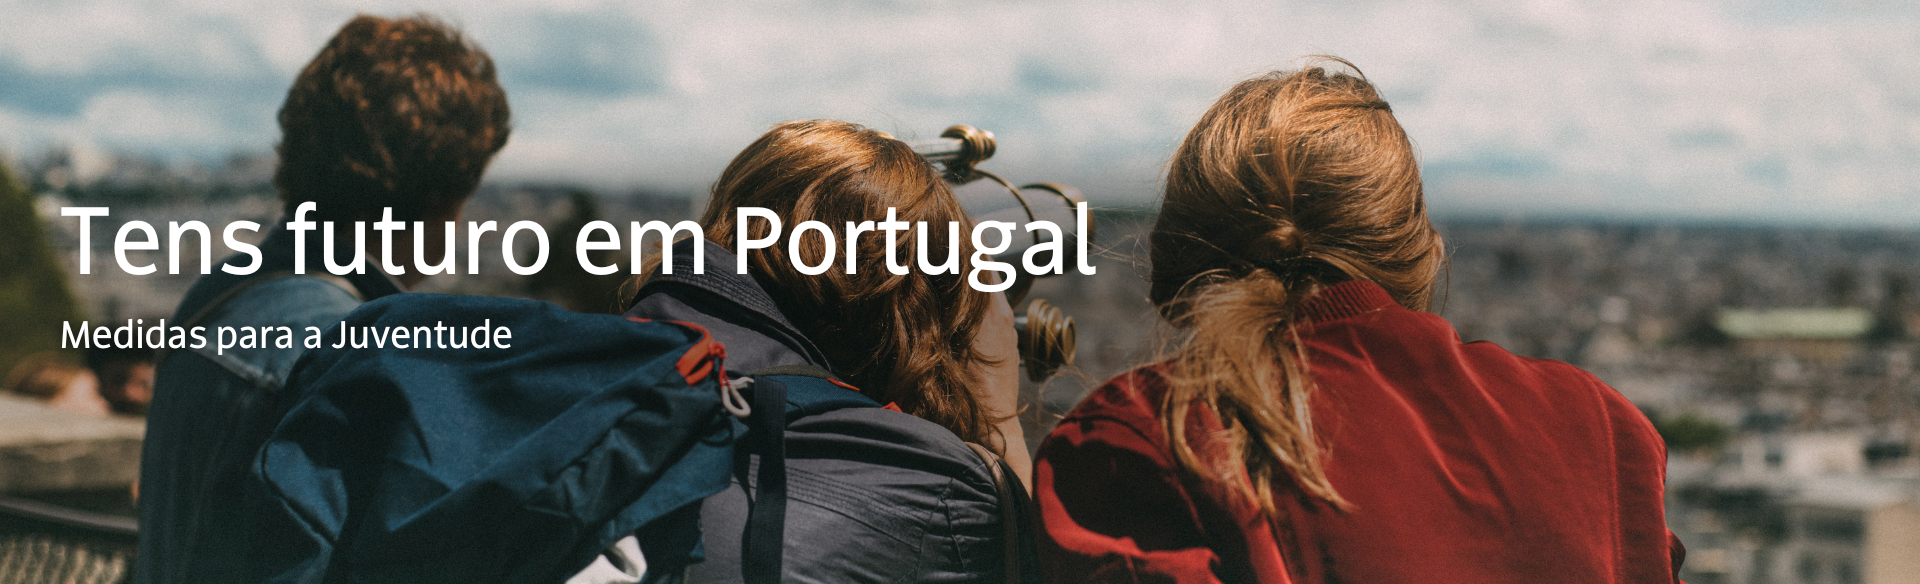 Tens Futuro em Portugal - Medidas para a Juventude